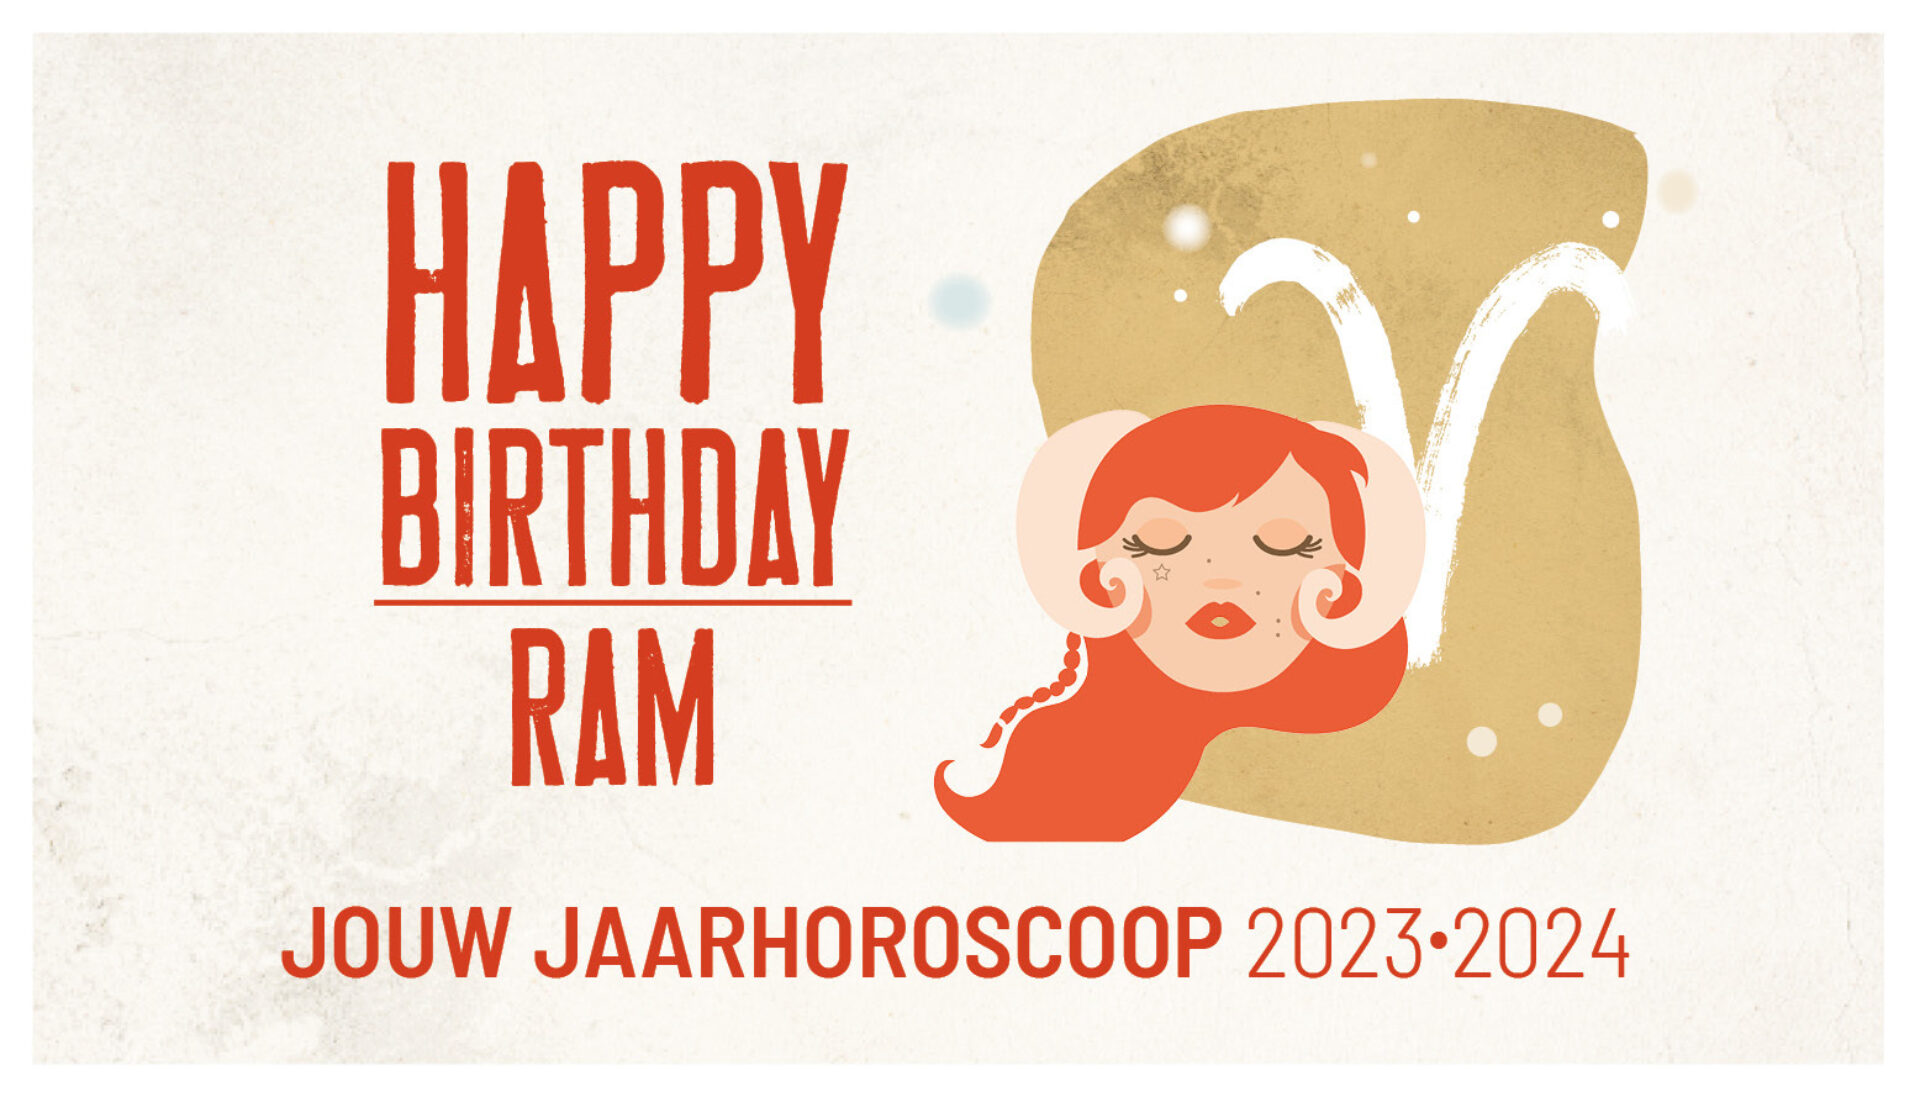 Ram, jouw jaarhoroscoop 2023-2024